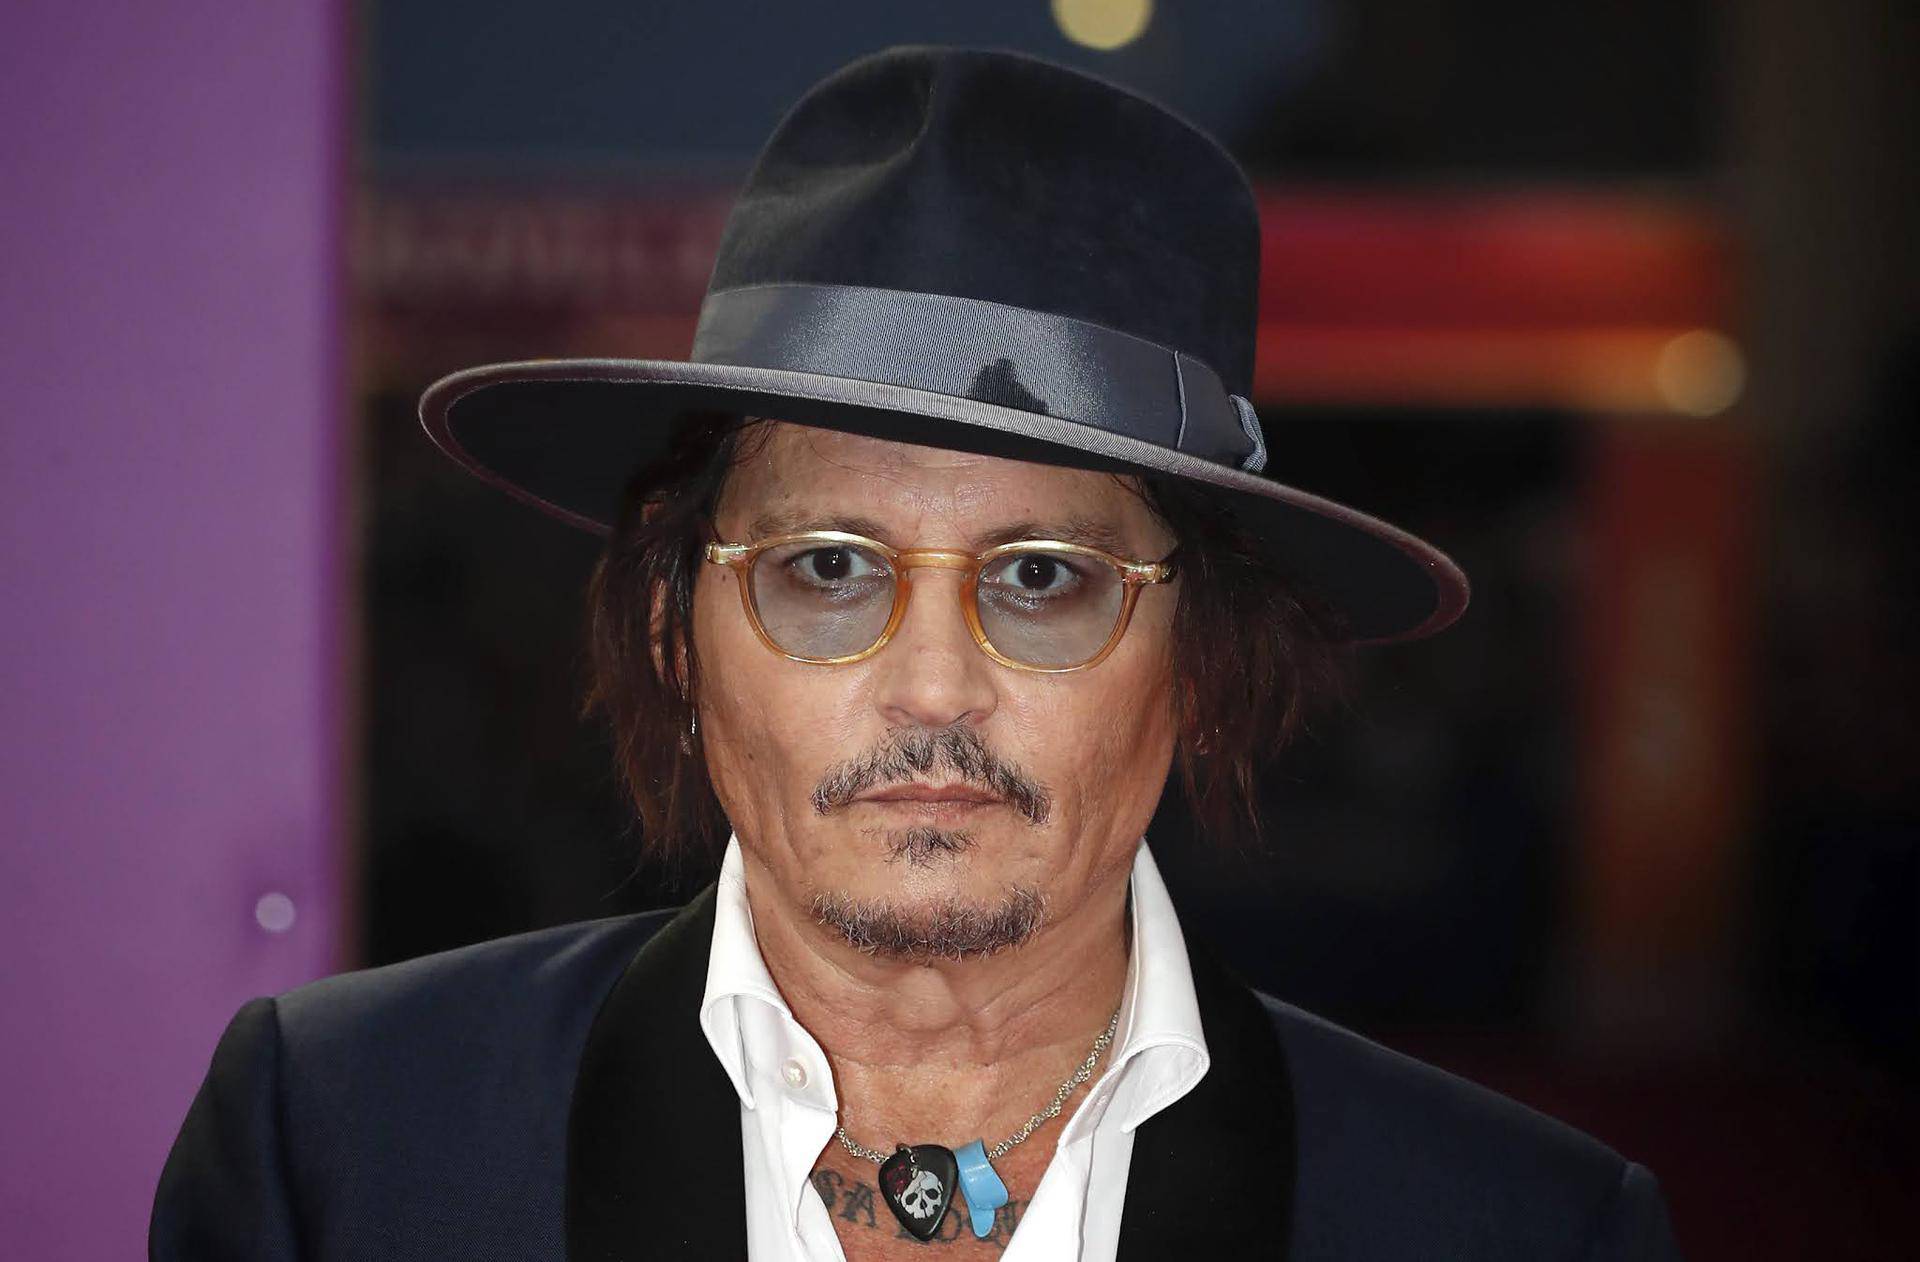 Nakon najružnijeg razvoda u Hollywoodu: Depp je dobio 20 milijuna da reklamira parfem...